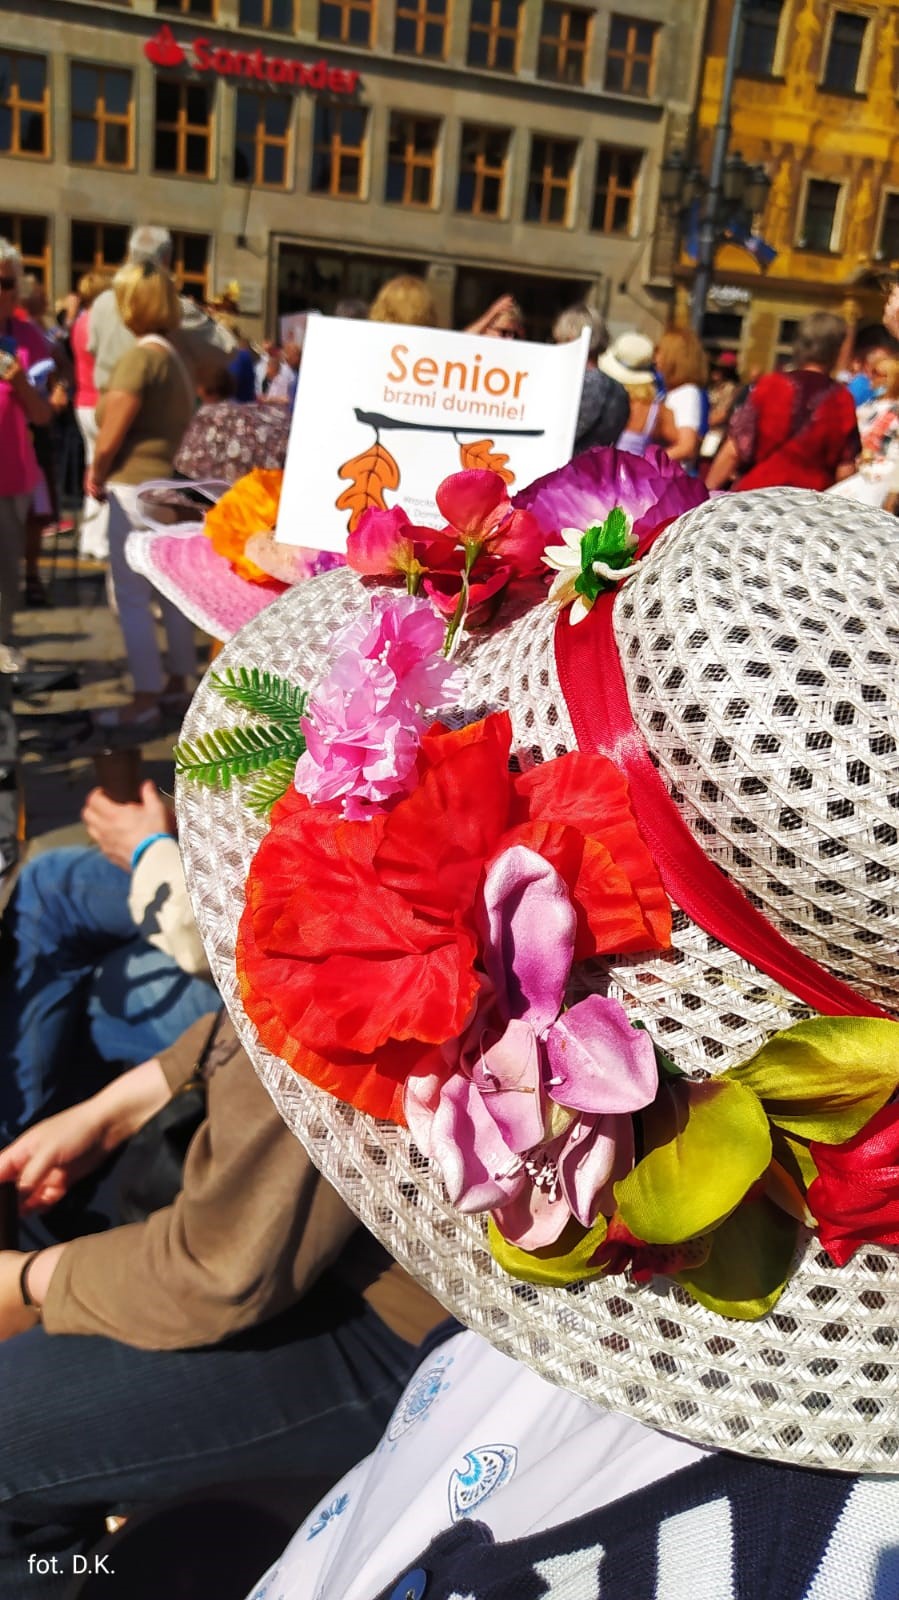 Na zdjęciu, na pierwszym planie beżowy kapelusz ustrojony w kwiaty koloru czerwonego i różowego dookoła tłum ludzi. W centrum chorągiewka z napisem „senior brzmi dumnie”